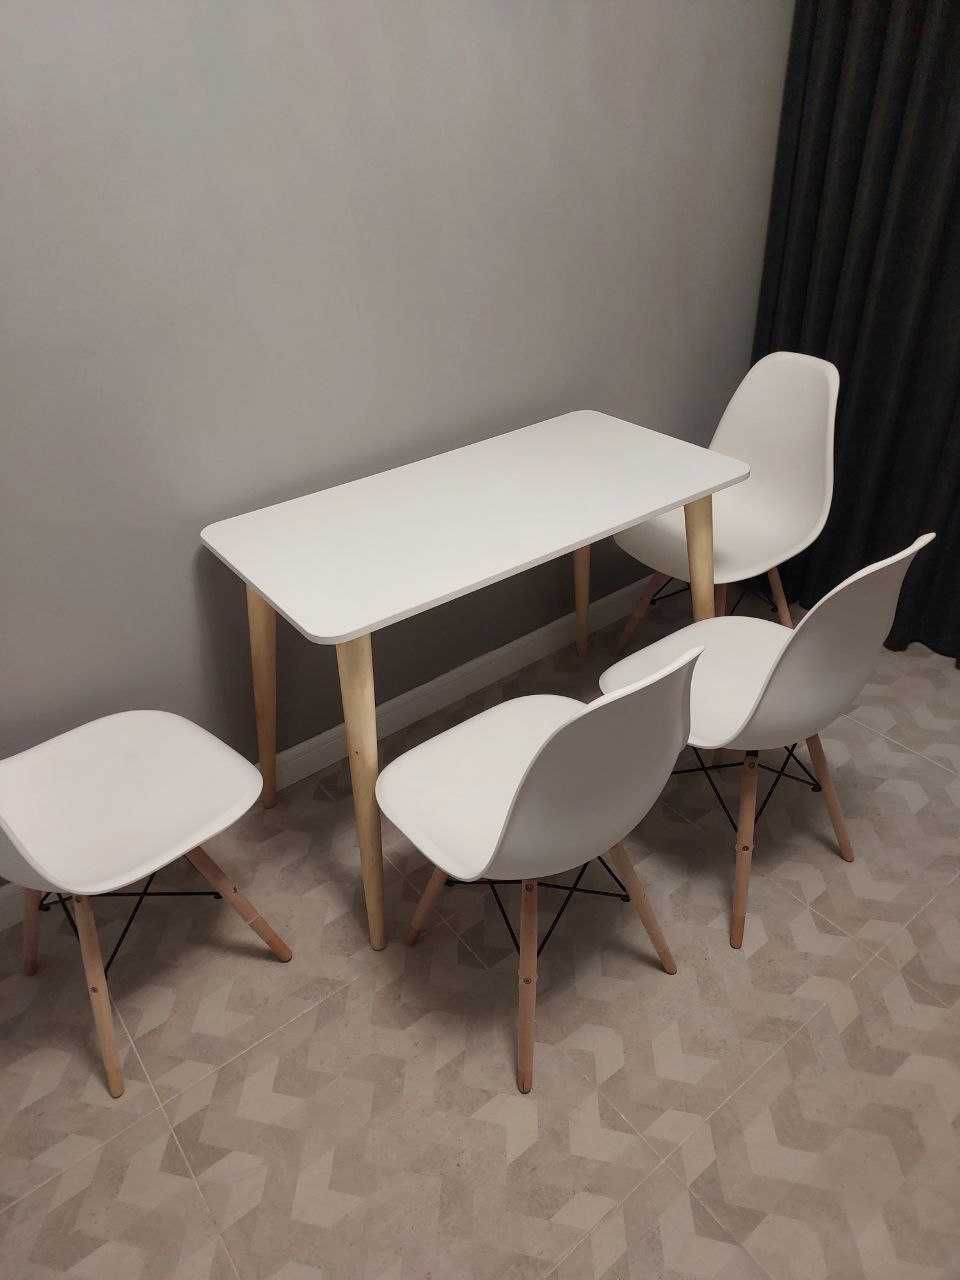 Стол стул кухонный в стиле loft, Ikea, Eames. Комплект 4 стула и стол